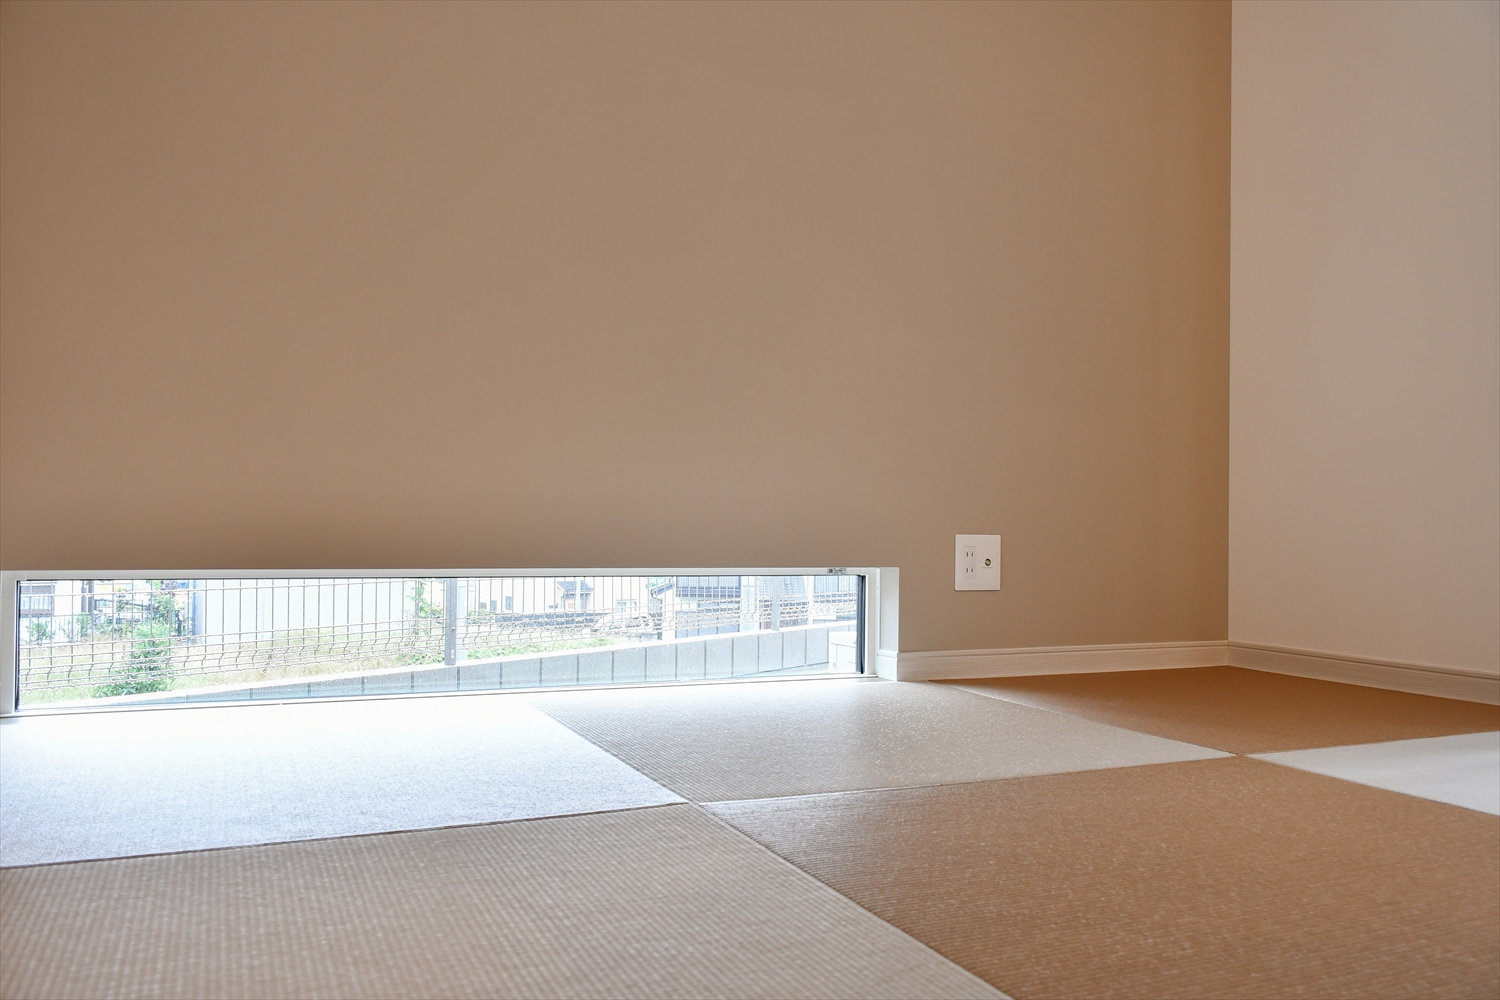 モダンな琉球畳が素敵なリビングのくつろぎ空間